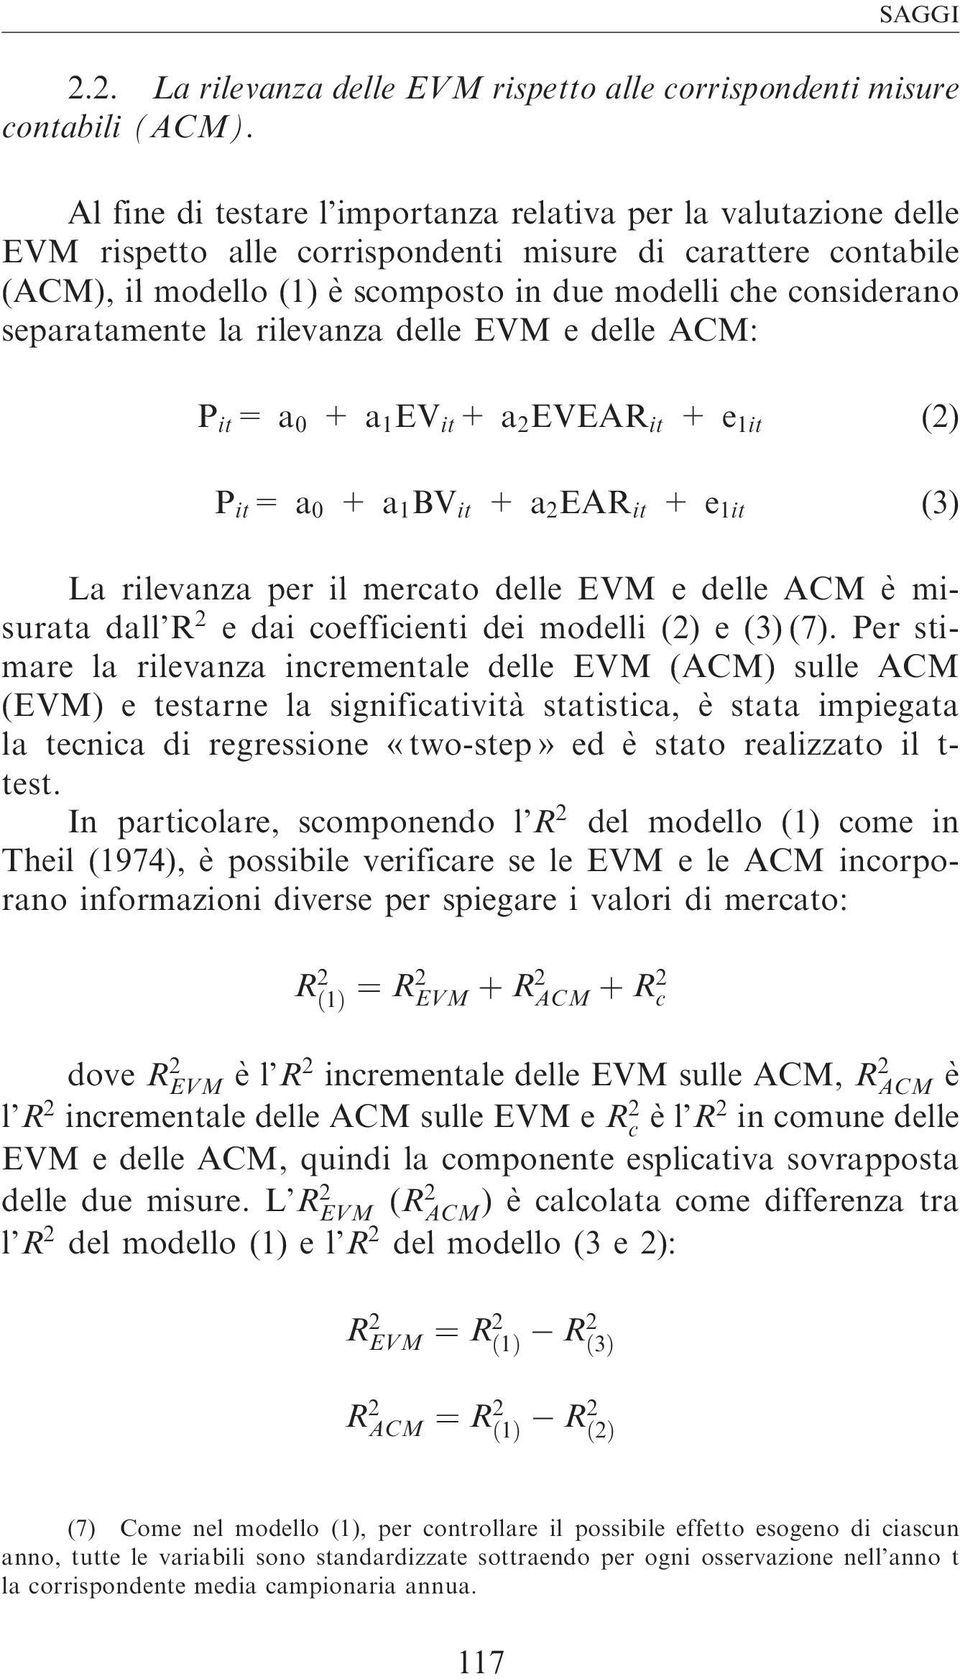 separatamente la rilevanza delle EVM e delle ACM: P it =a 0 +a 1 EV it +a 2 EVEAR it +e 1it (2) P it =a 0 +a 1 BV it +a 2 EAR it +e 1it (3) La rilevanza per il mercato delle EVM e delle ACM e`